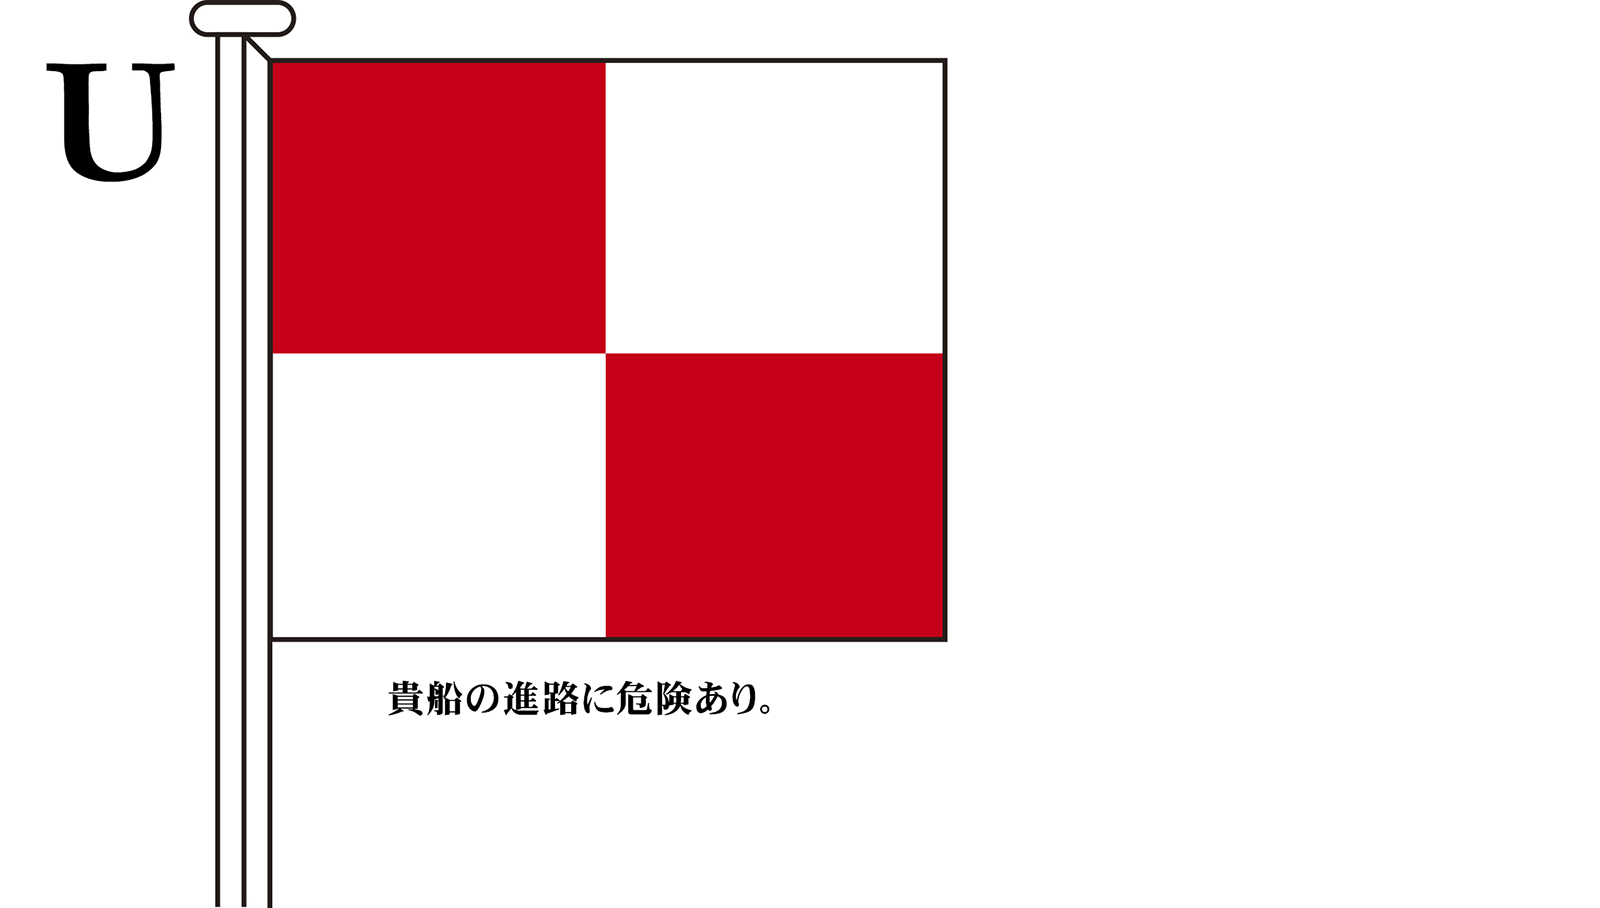 国際信号旗 international maritime signal flags 海上において船舶間の通信に利用される世界共通の旗 Alphabetical 珍しい 木綿 ヨット用：30×39cm 福袋特集 文字旗 Flags